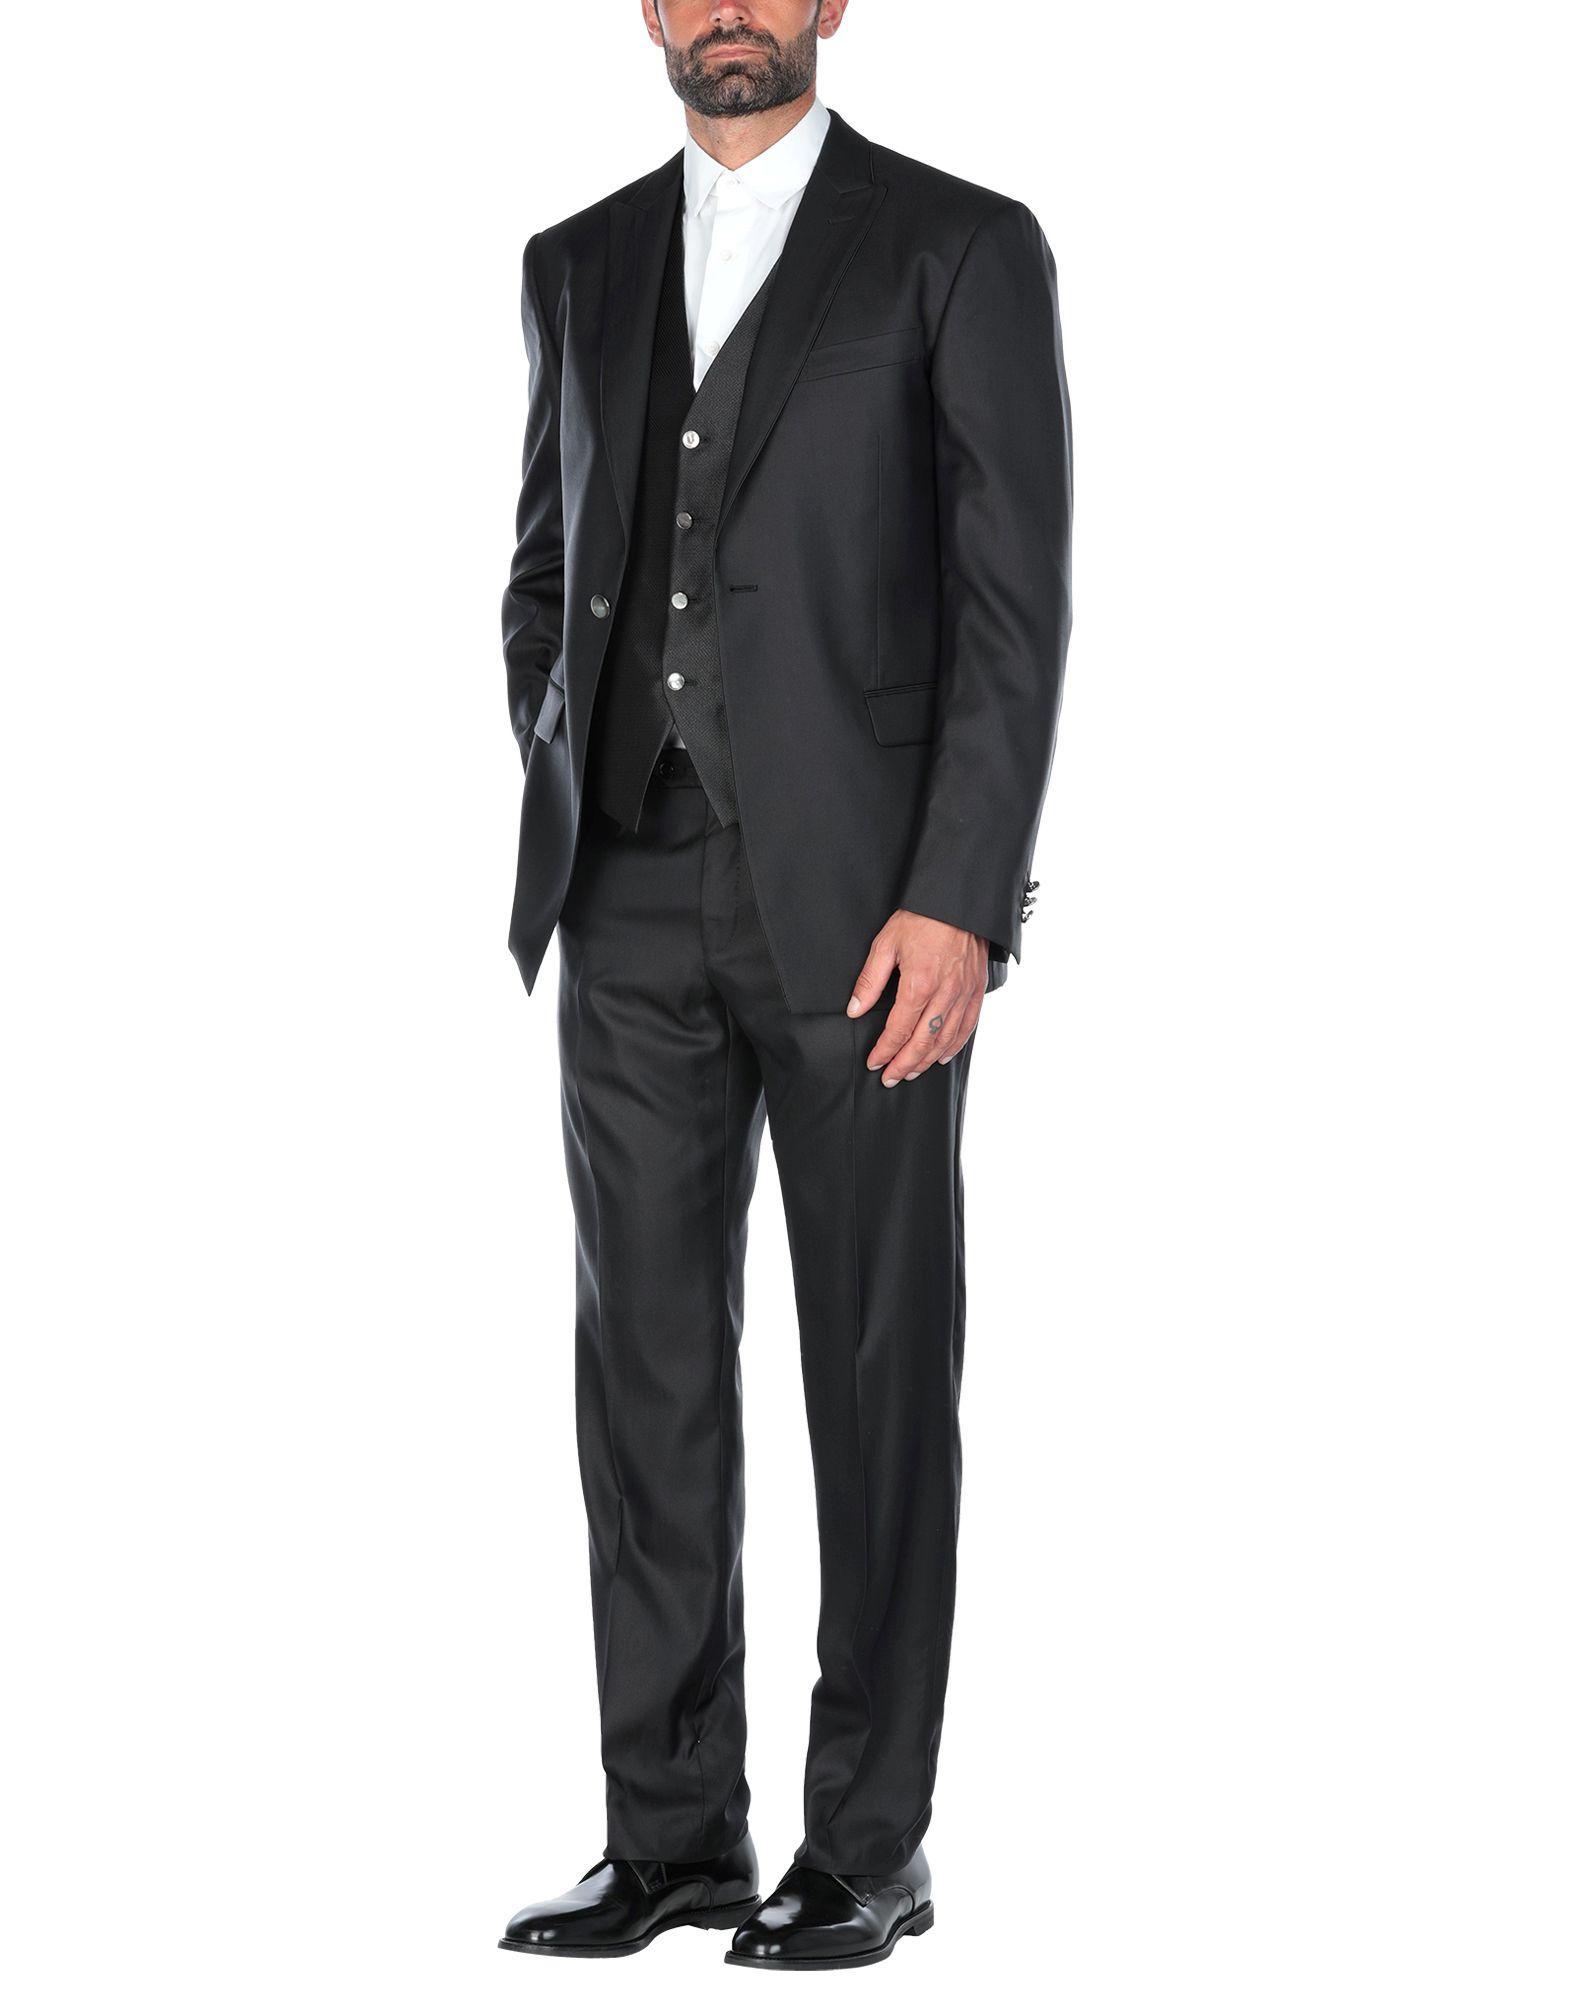 Pal Zileri Cerimonia Suit in Black for Men - Lyst